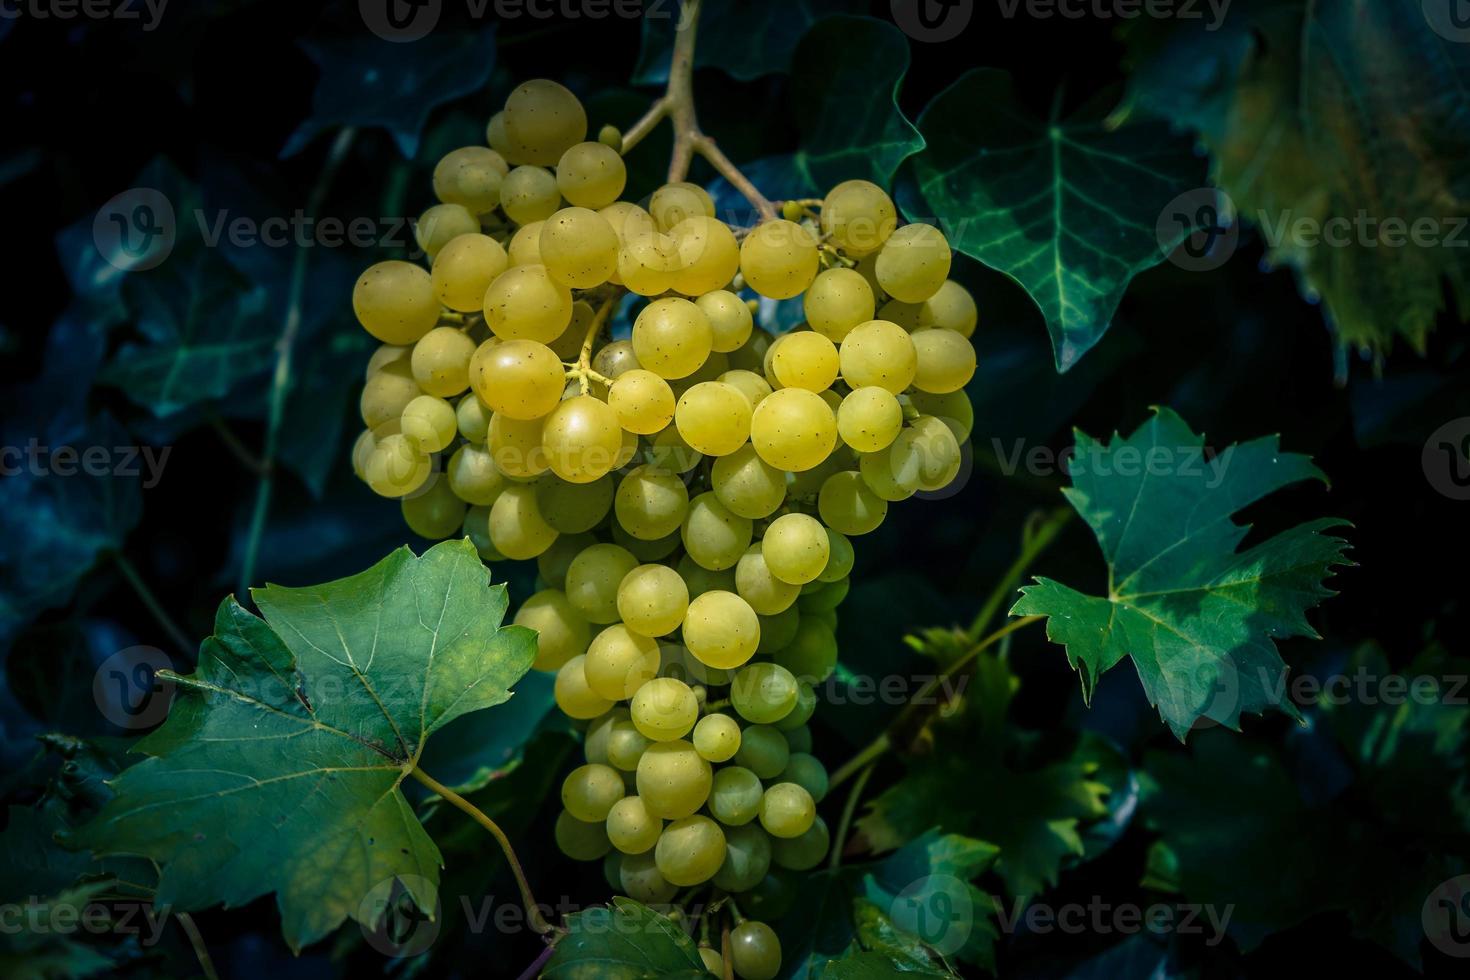 witte wijndruiven en bladeren foto